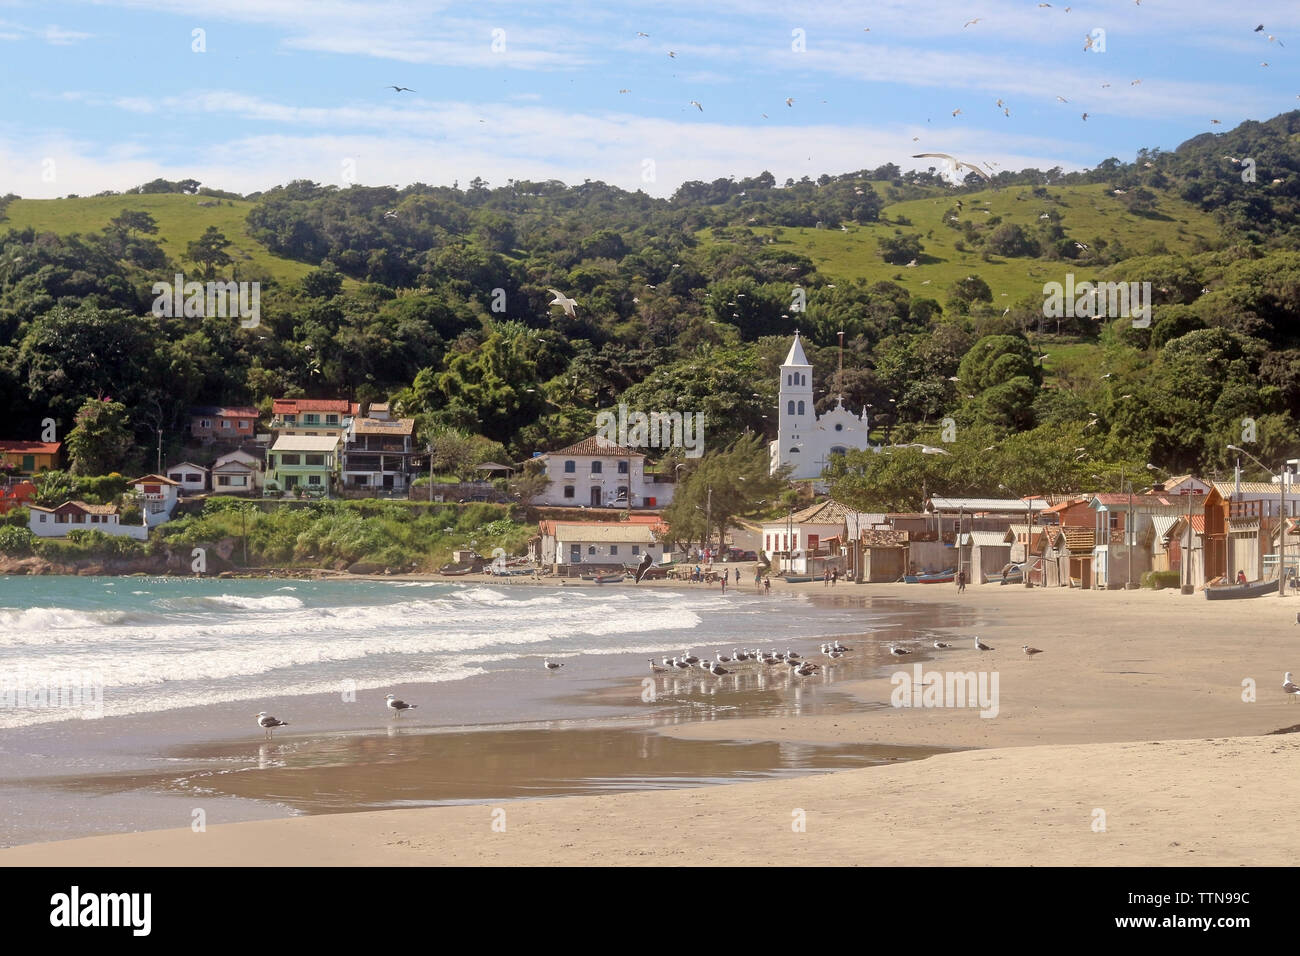 Blick auf den Strand, das ist ein kleines Fischerdorf im Staat Santa Catarina - Brasilien Stockfoto